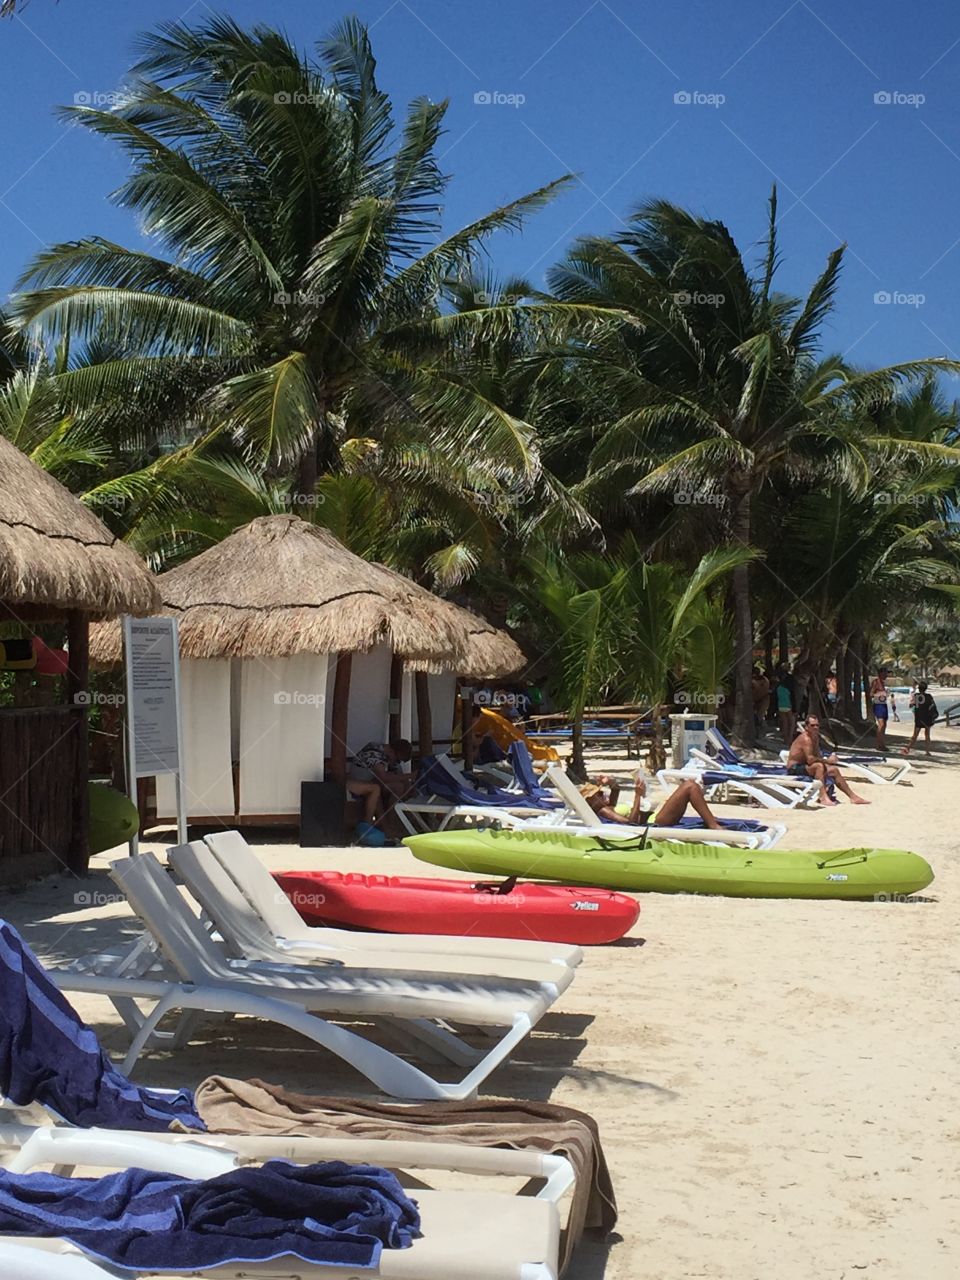 Beach of Cancun 